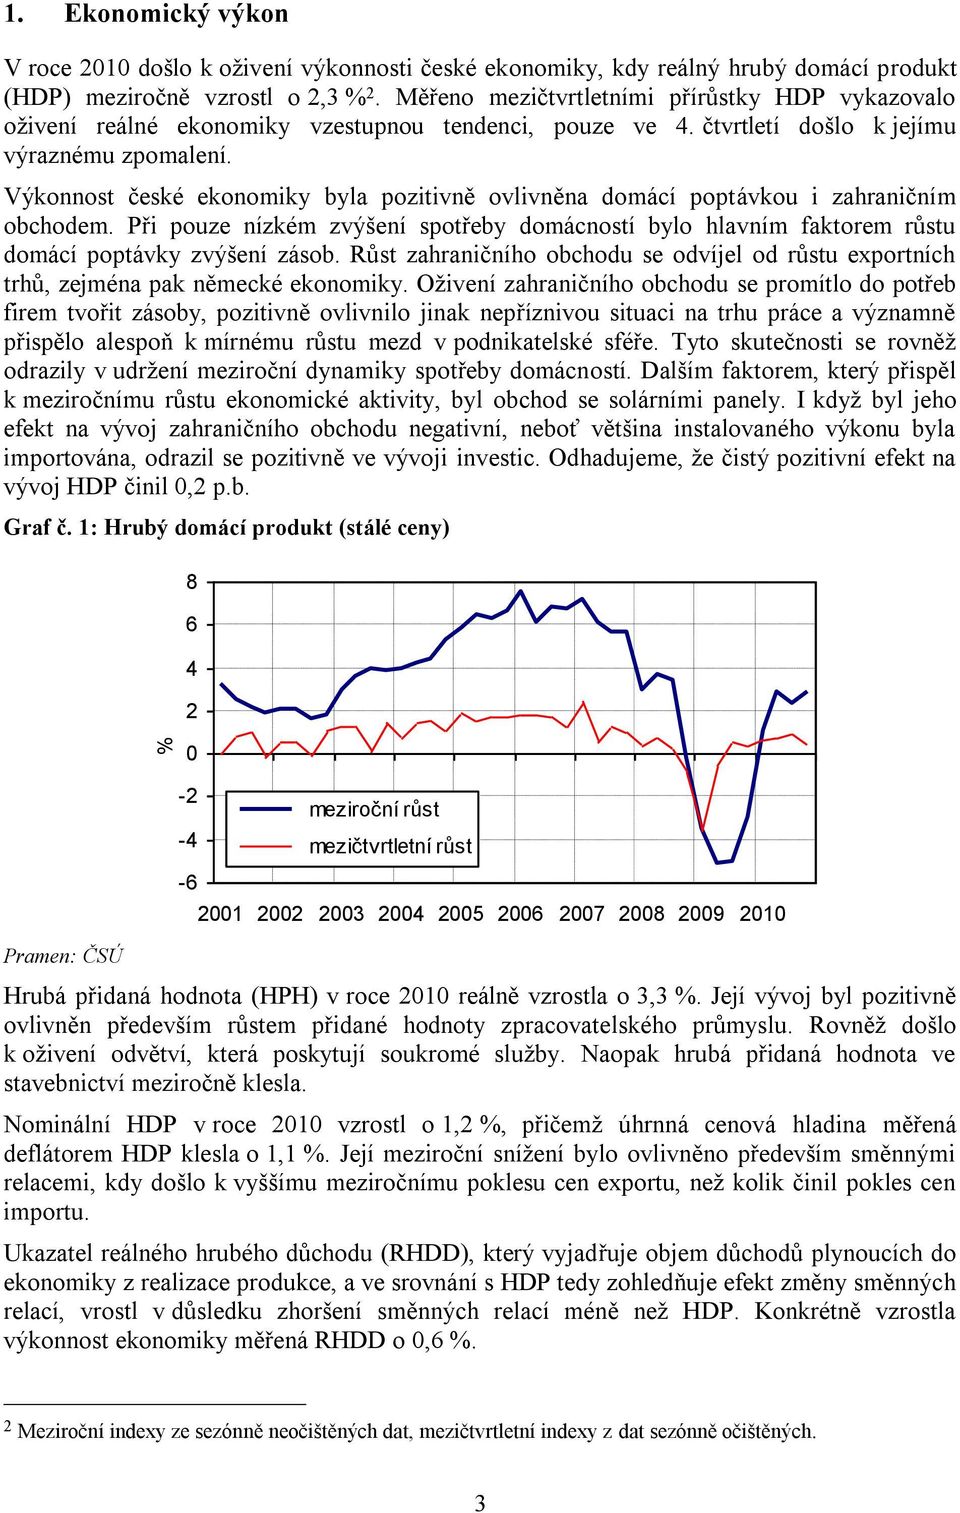 Výkonnost české ekonomiky byla pozitivně ovlivněna domácí poptávkou i zahraničním obchodem. Při pouze nízkém zvýšení spotřeby domácností bylo hlavním faktorem růstu domácí poptávky zvýšení zásob.